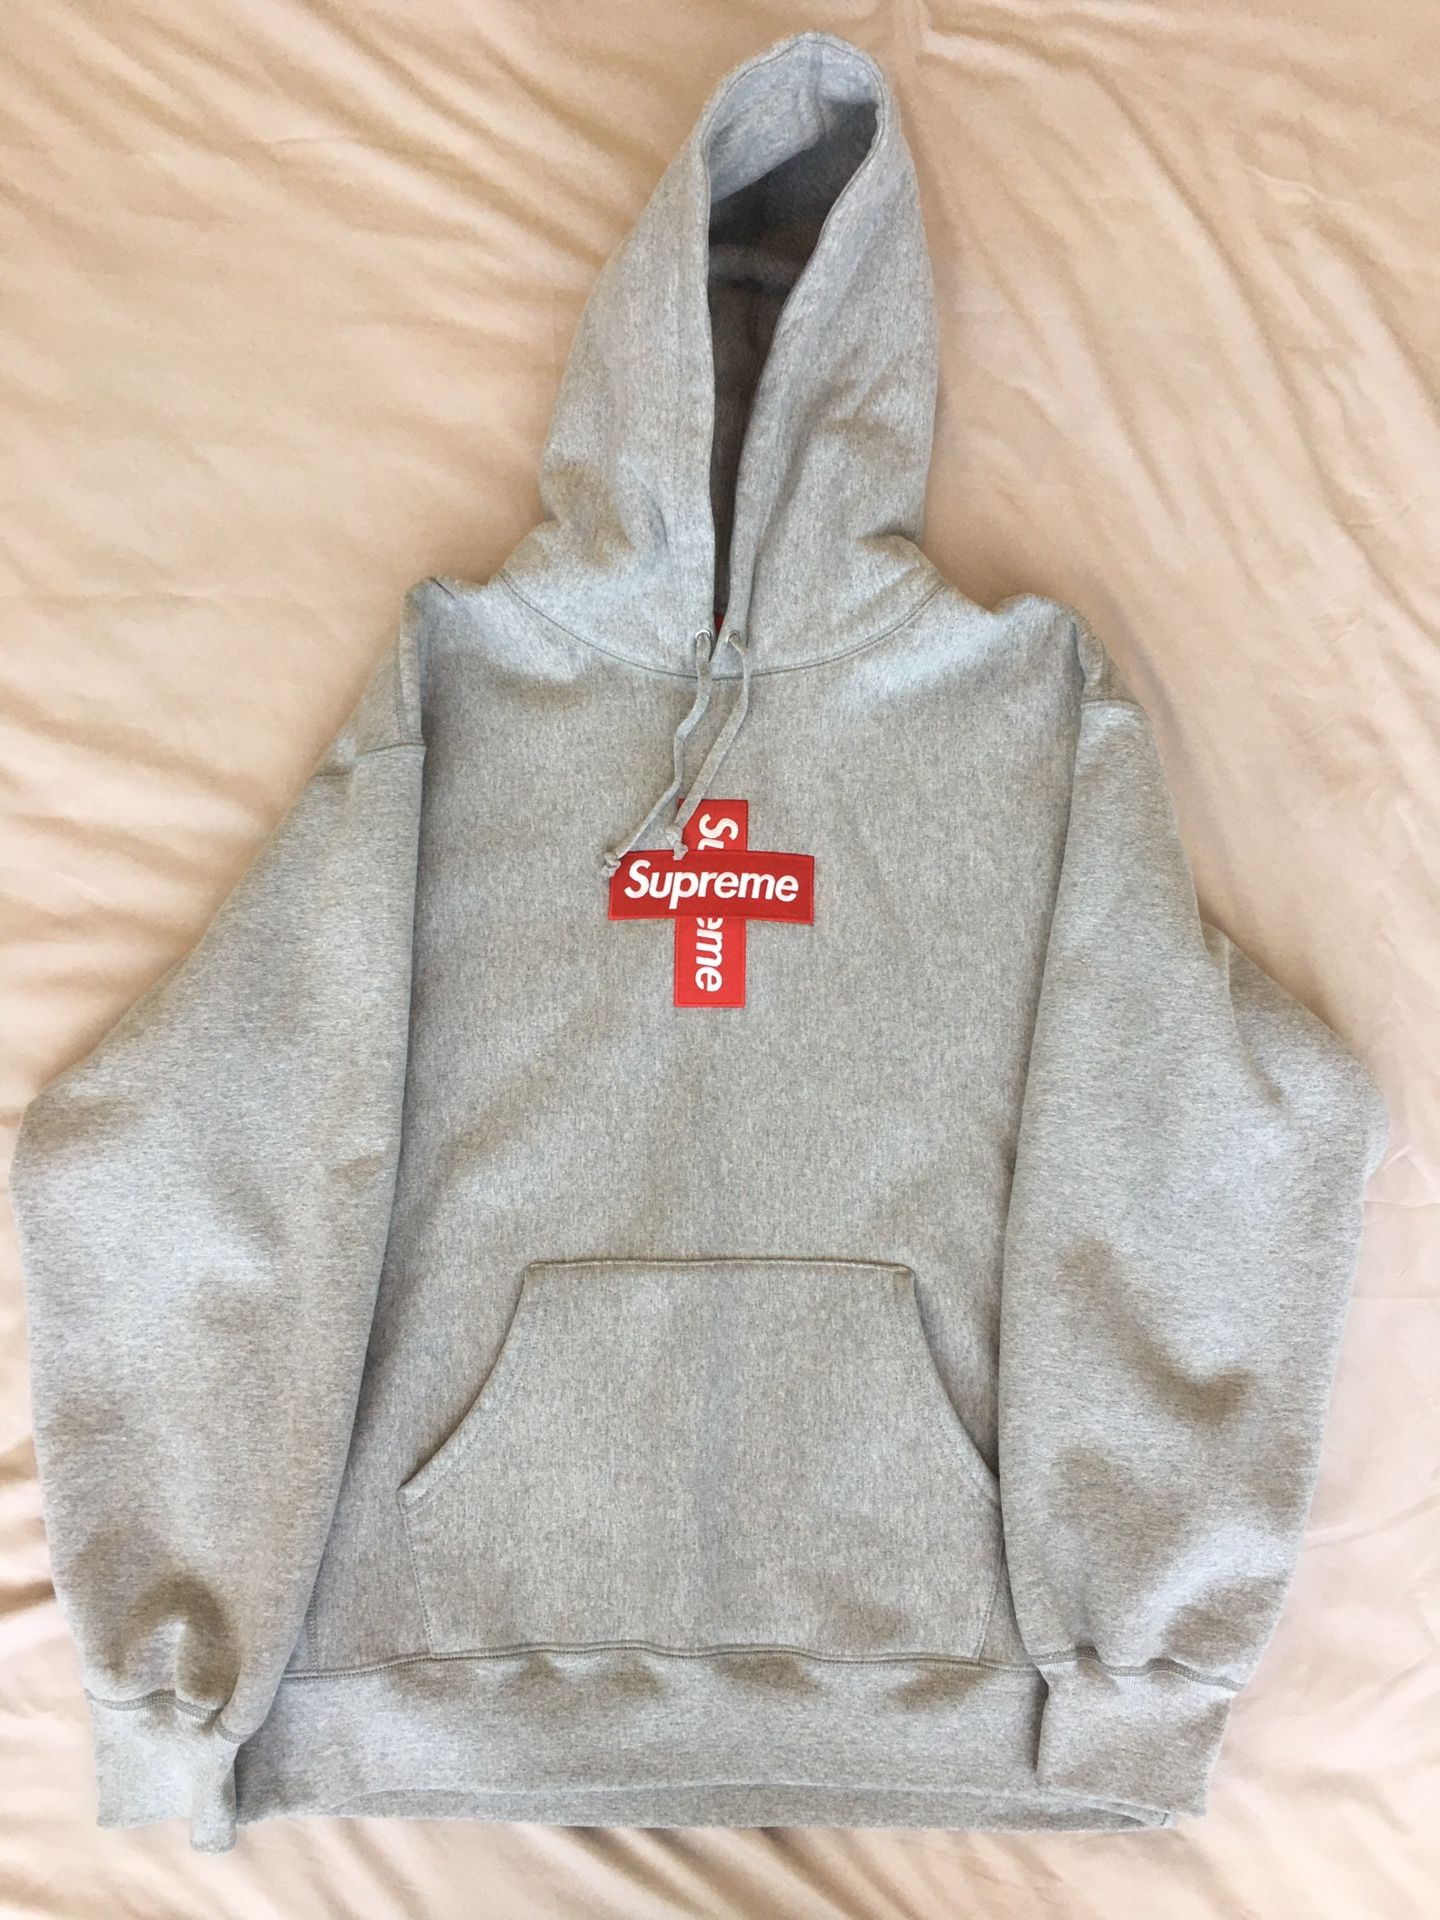 Supreme Cross Box Logo Hooded Sweatshirt Large Gently Worn